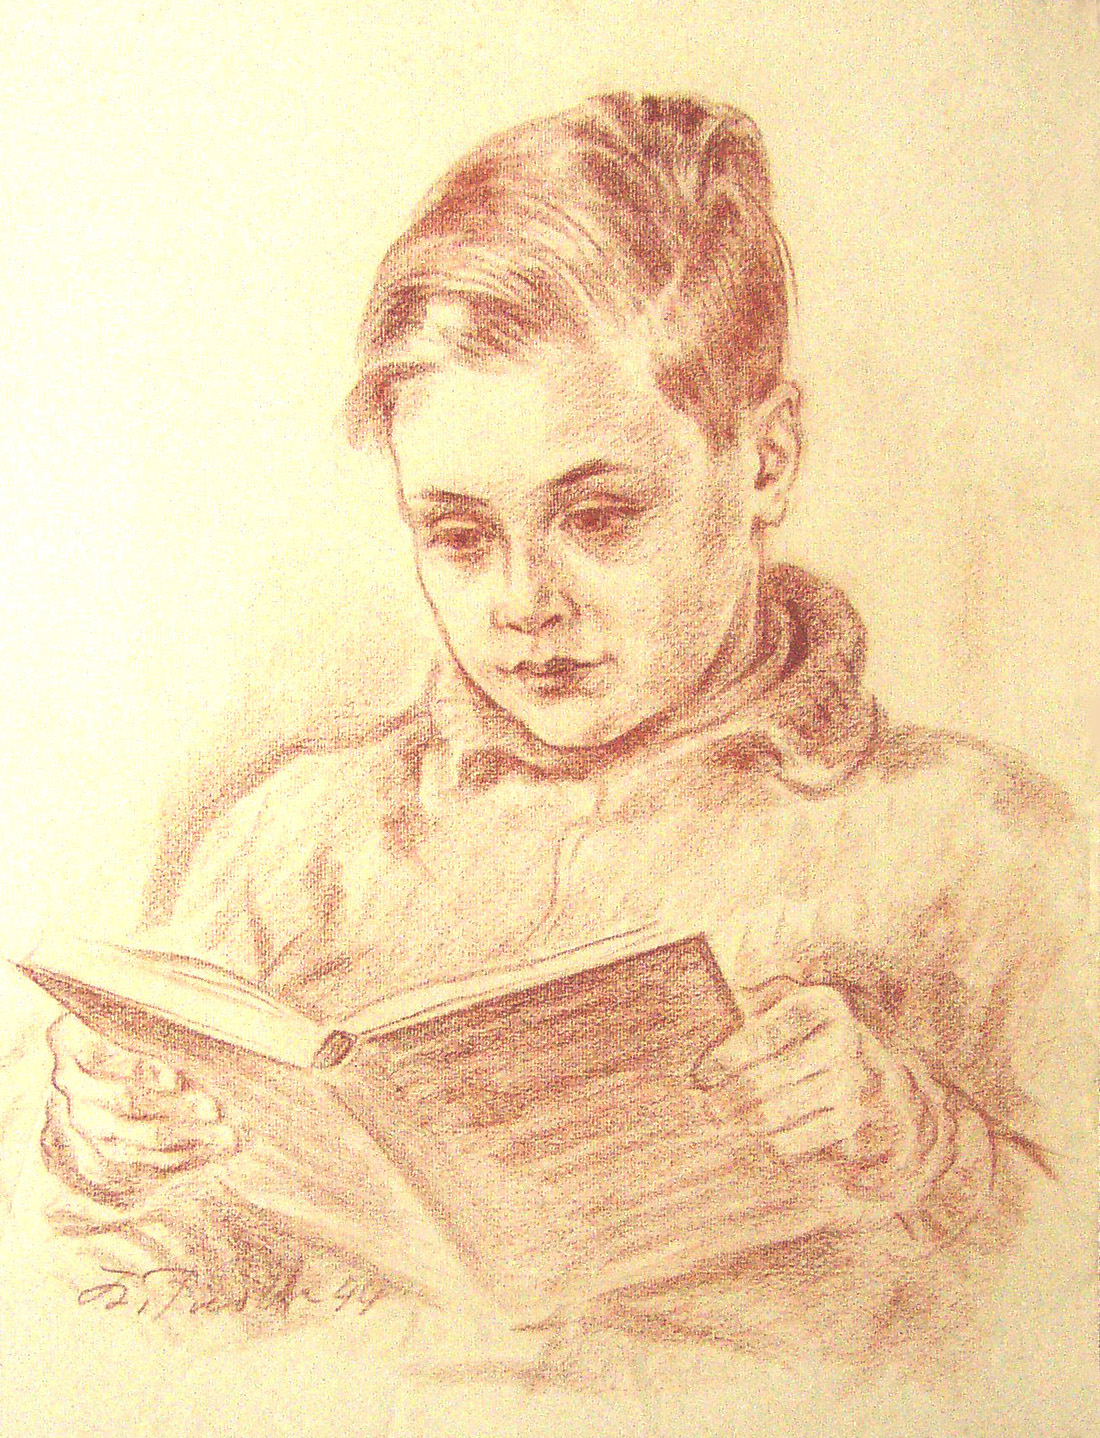 Frank Fiedler von seinem Vater gezeichnet